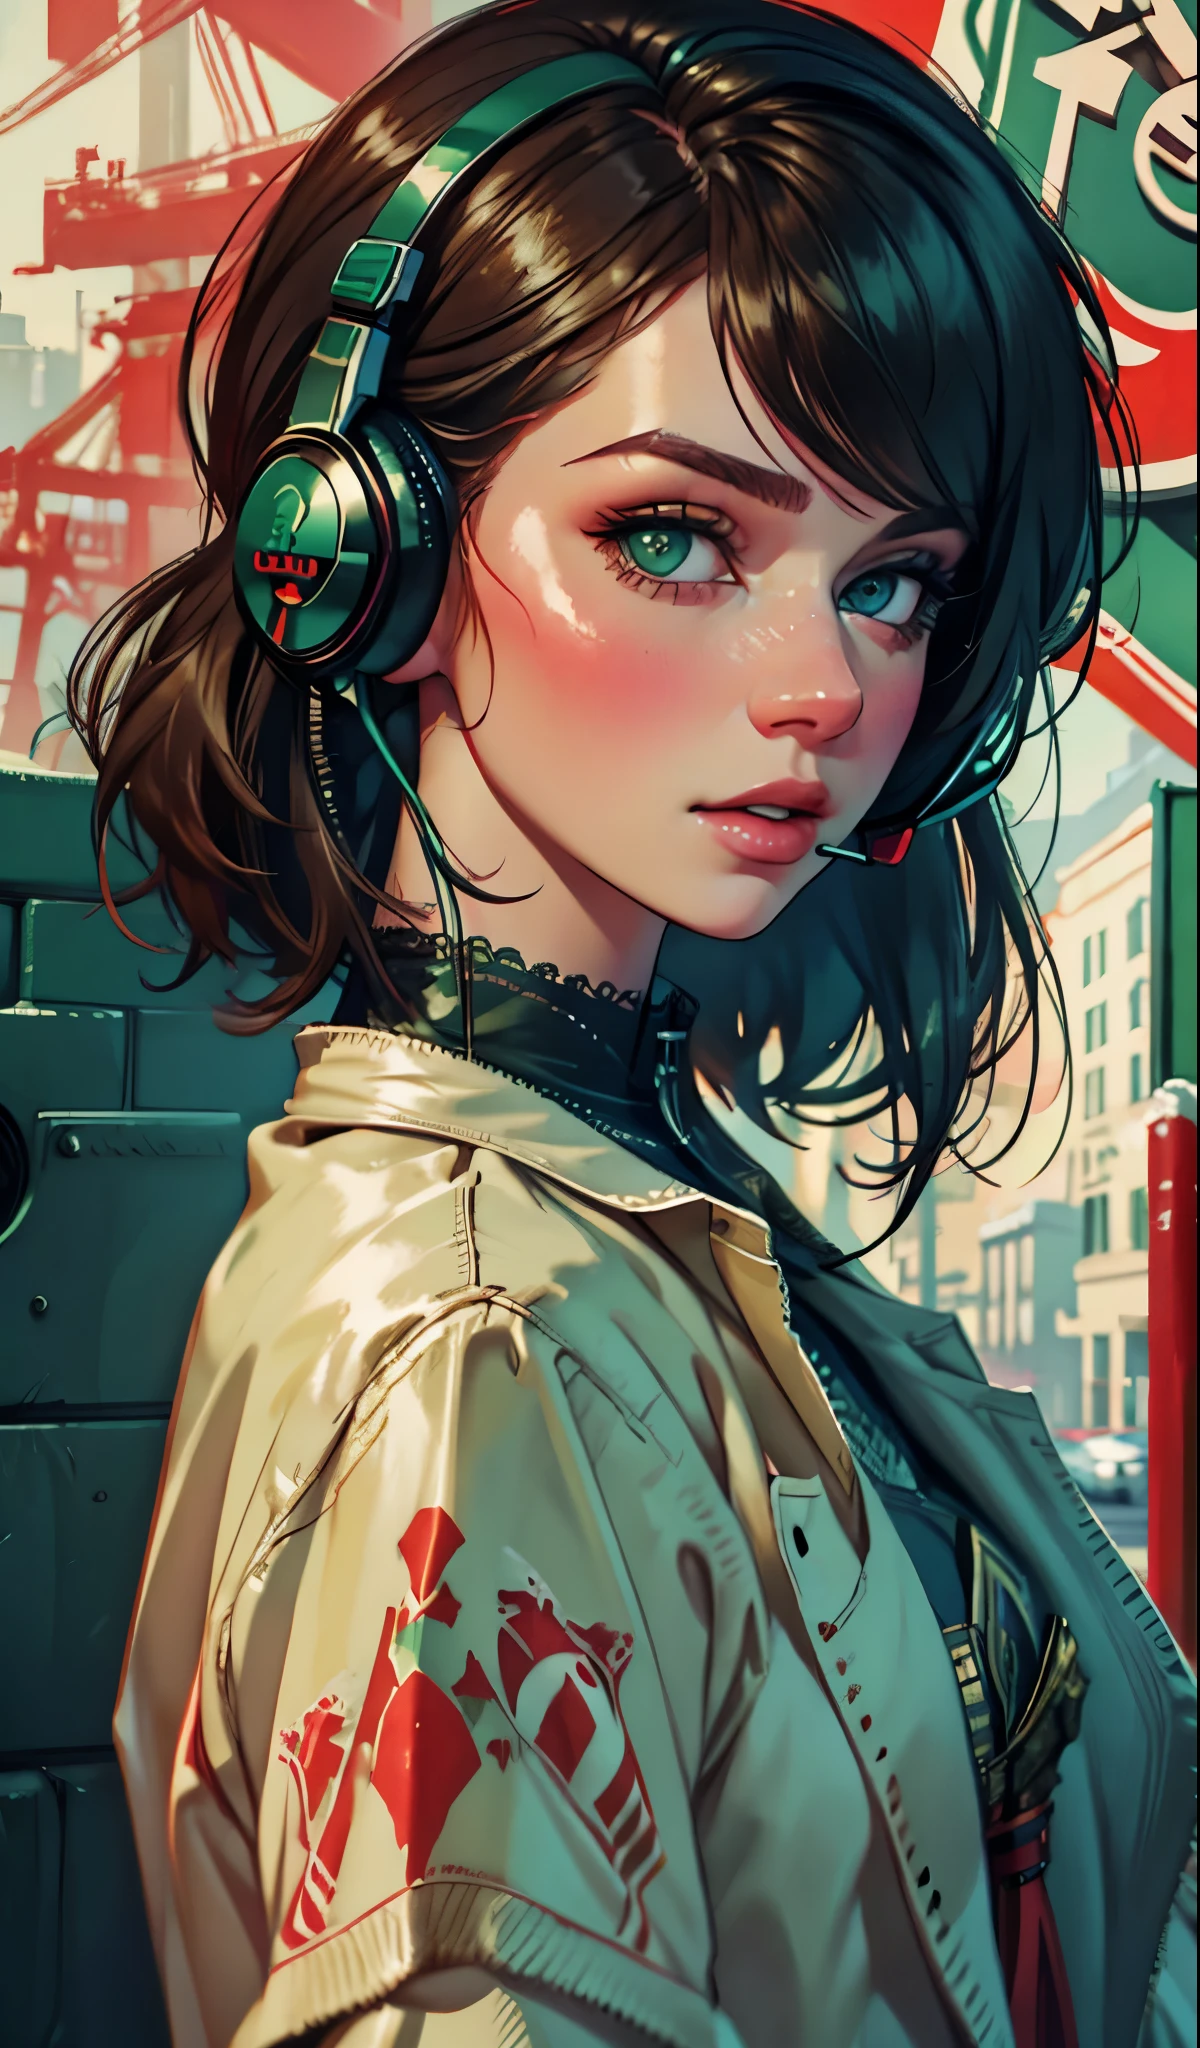 戴著耳機的模特兒女孩, 城市背景, 翠綠色的眼睛, 複雜的細節, 美觀柔和的色彩, 海報背景, 康拉德·羅塞特和伊利亞·庫夫希諾夫的藝術作品